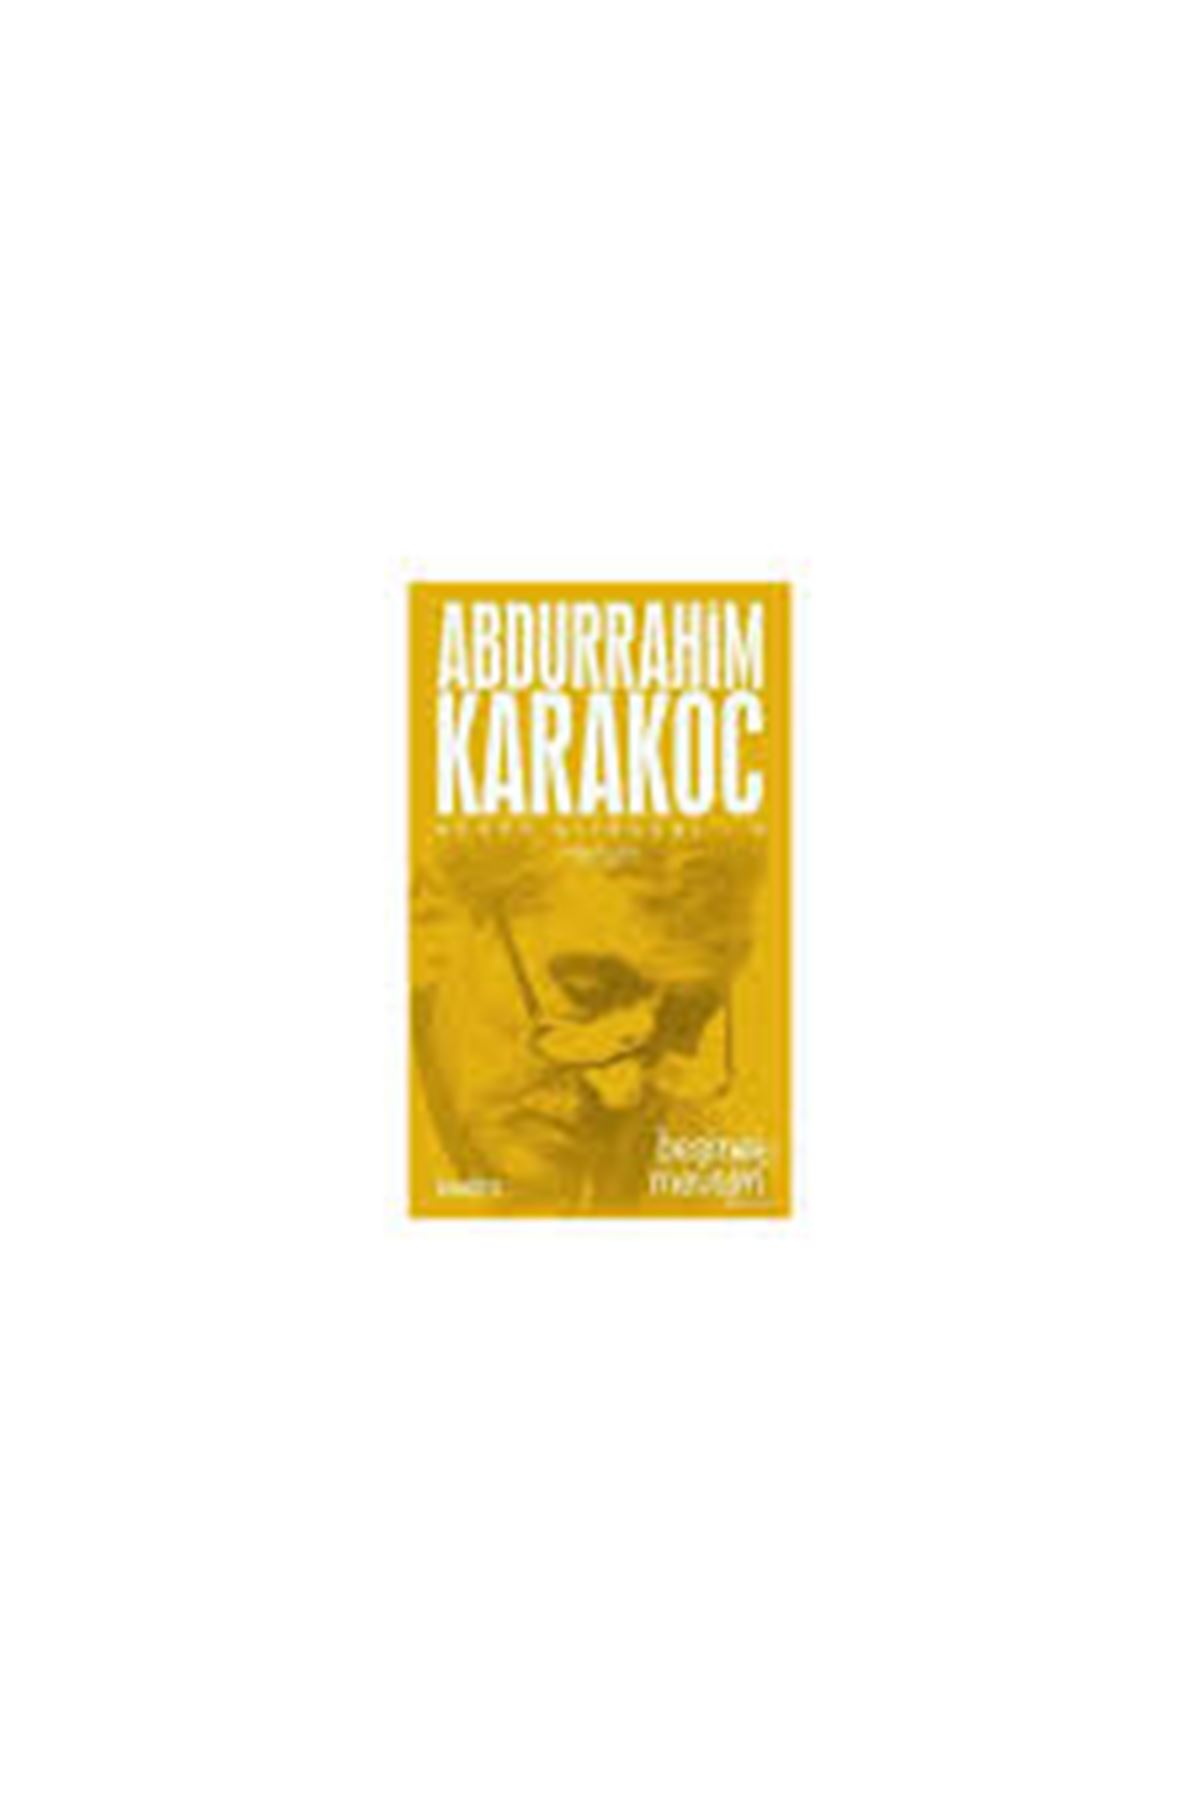 Abdurrahim Karakoç - Bütün Şiirleri 5